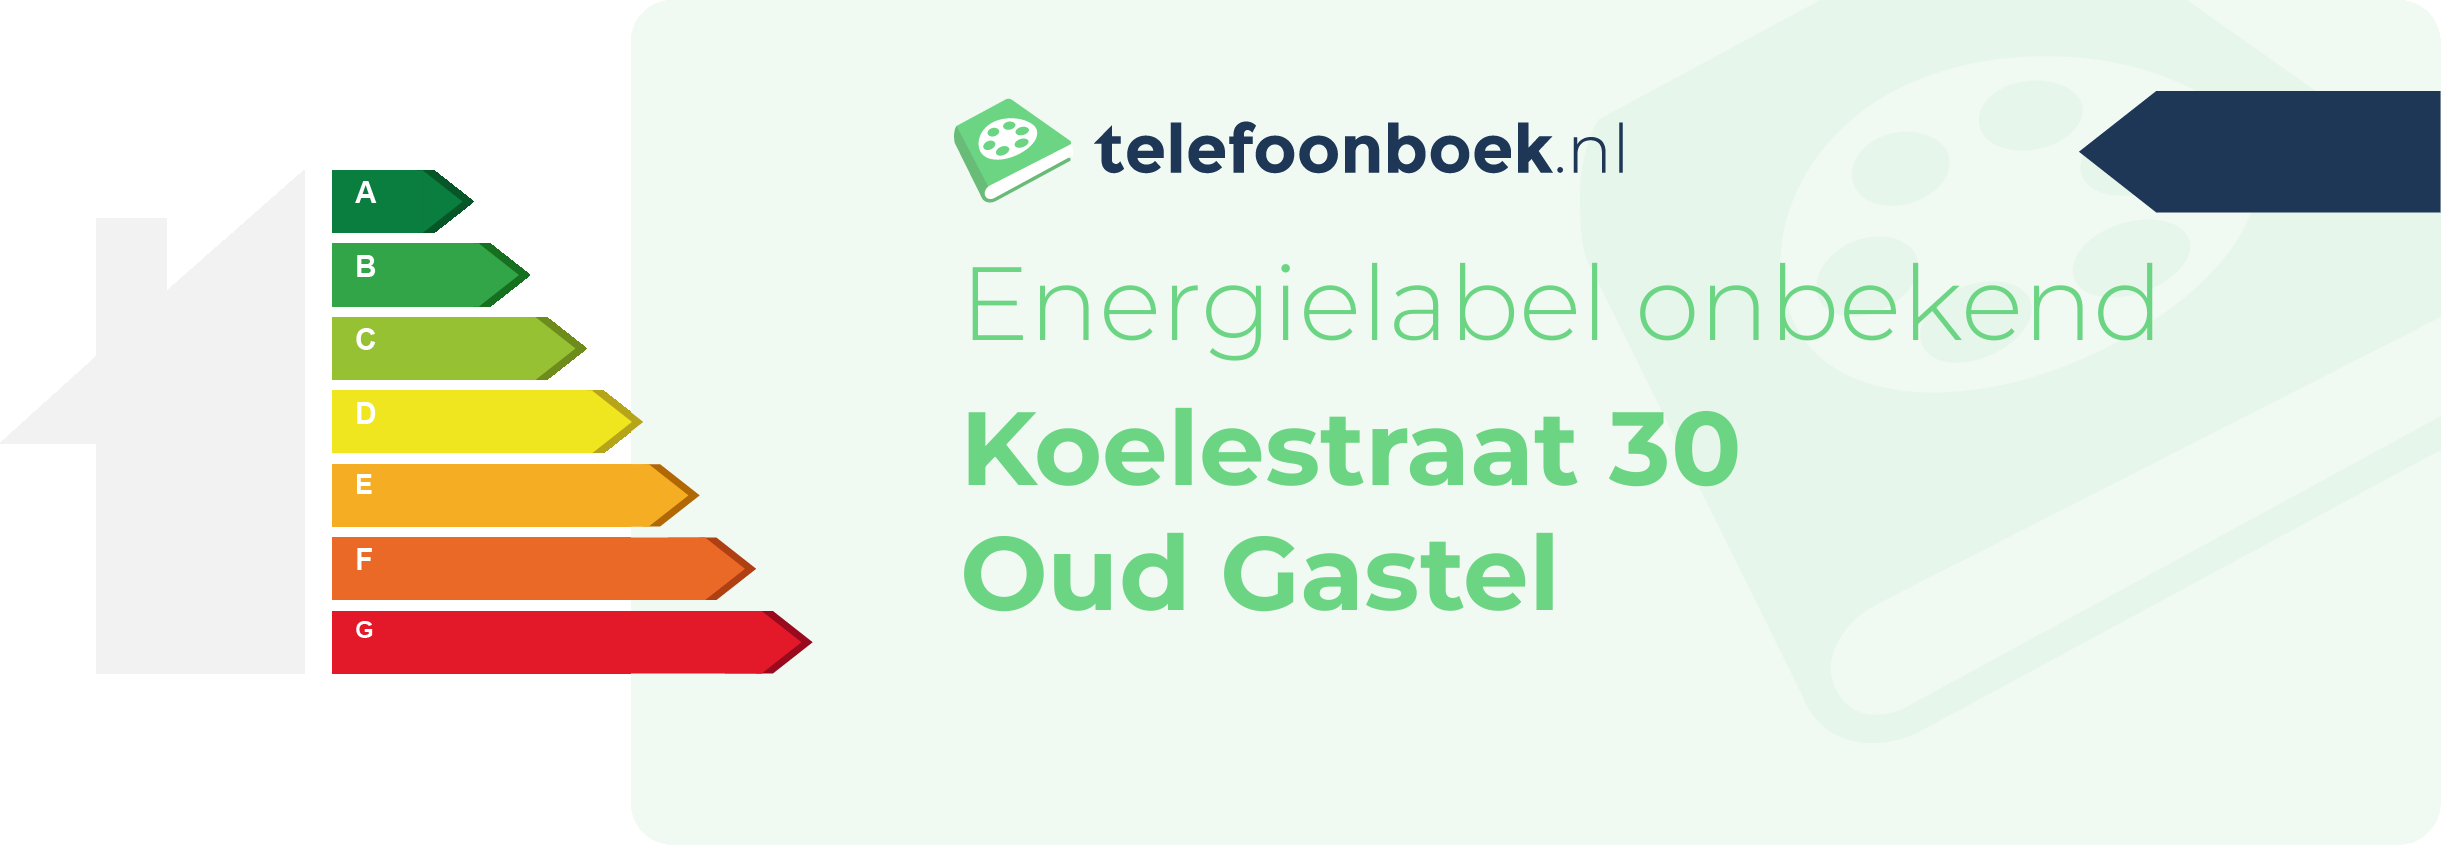 Energielabel Koelestraat 30 Oud Gastel